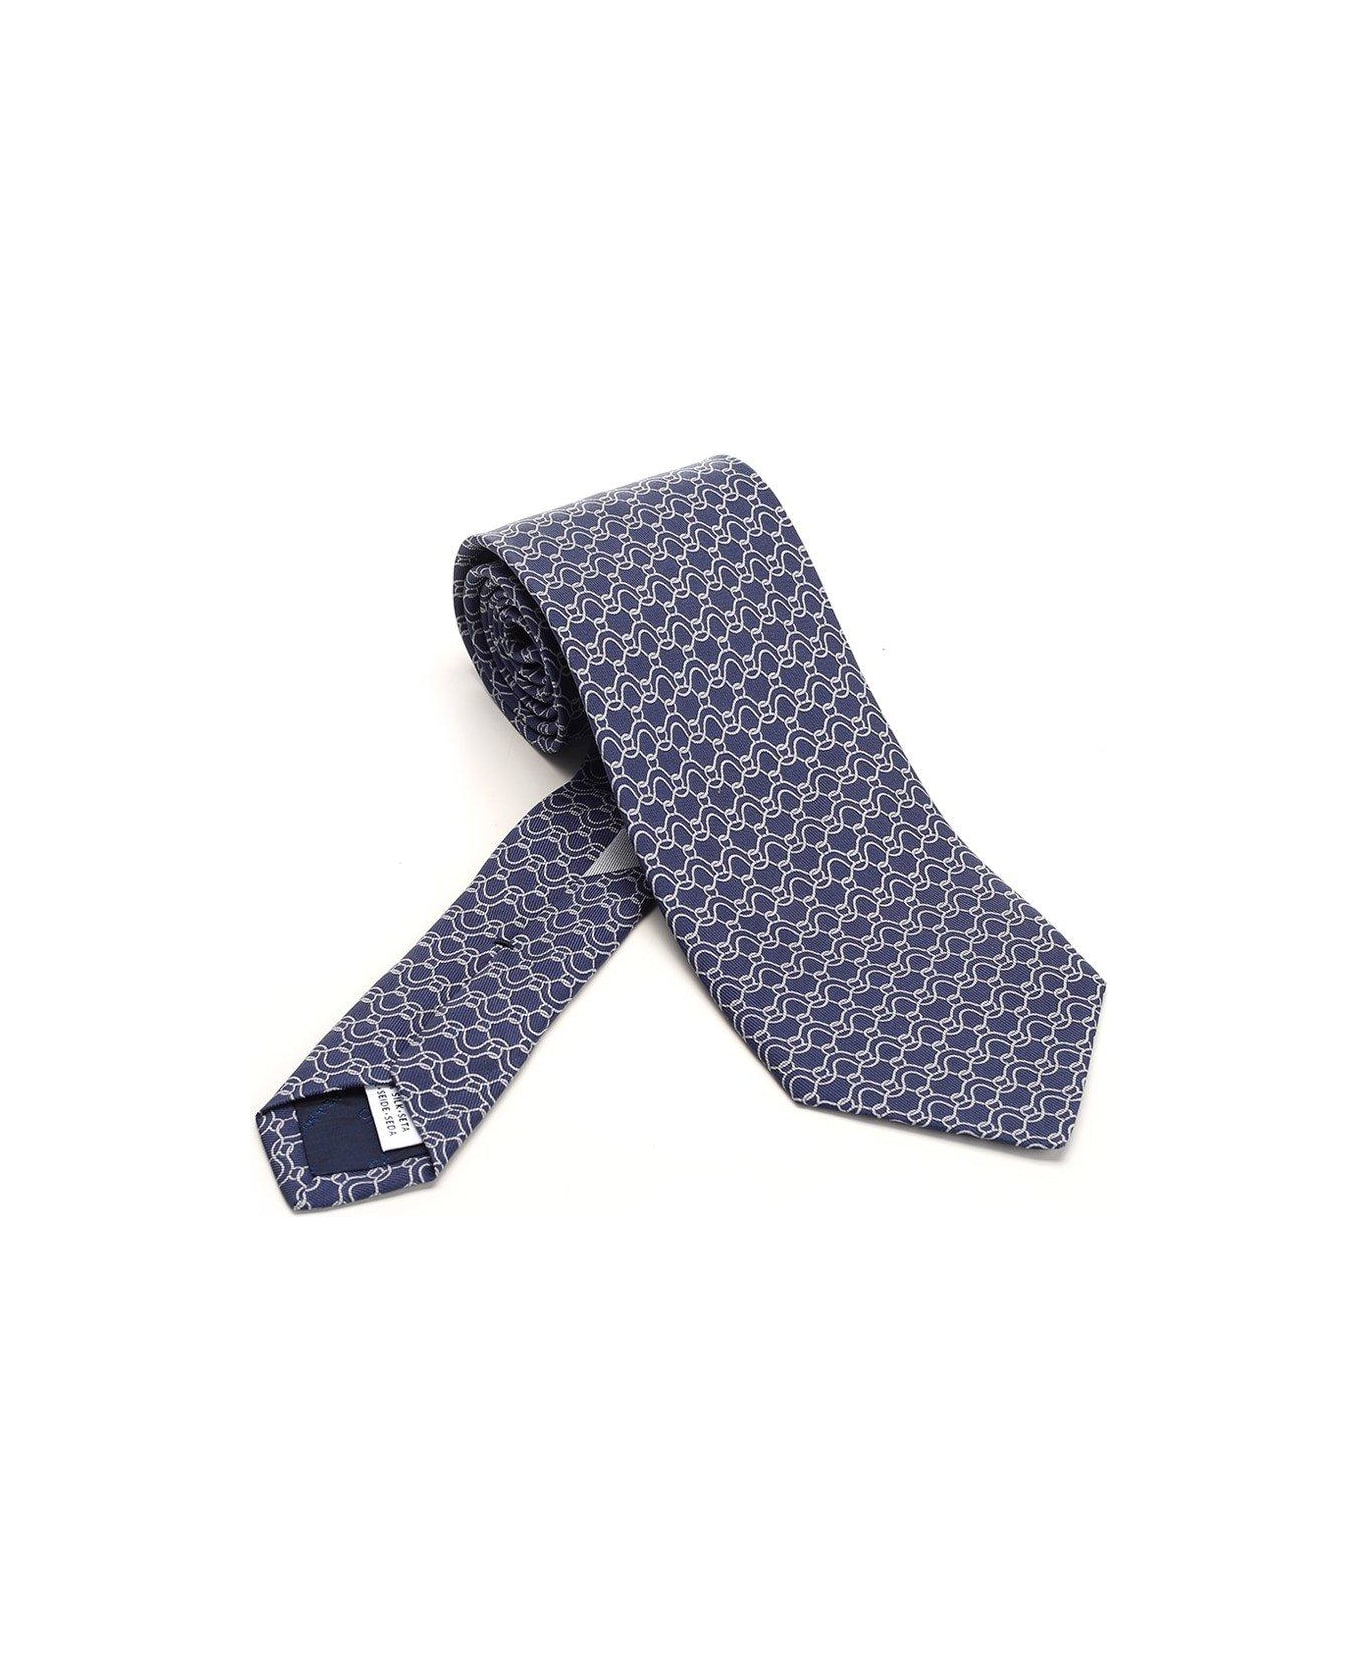 Ferragamo Gancini Printed Tie - Blue ネクタイ